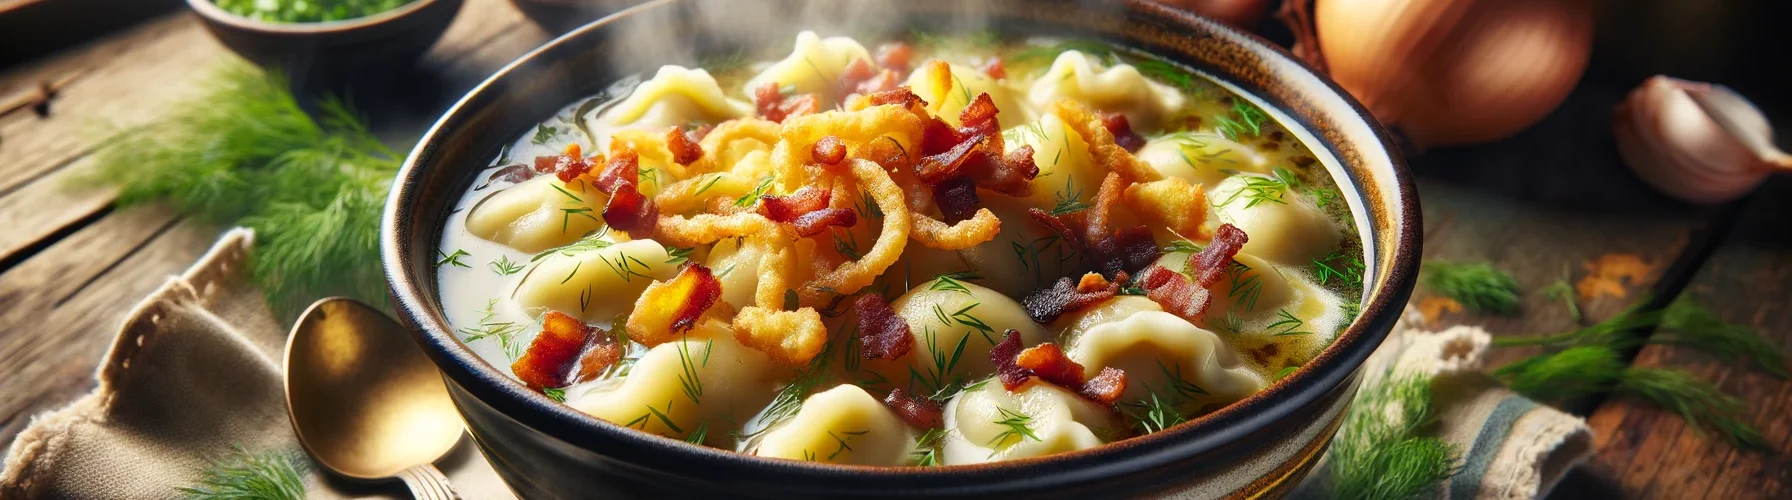 Галушки с салом для супа – кулинарный рецепт